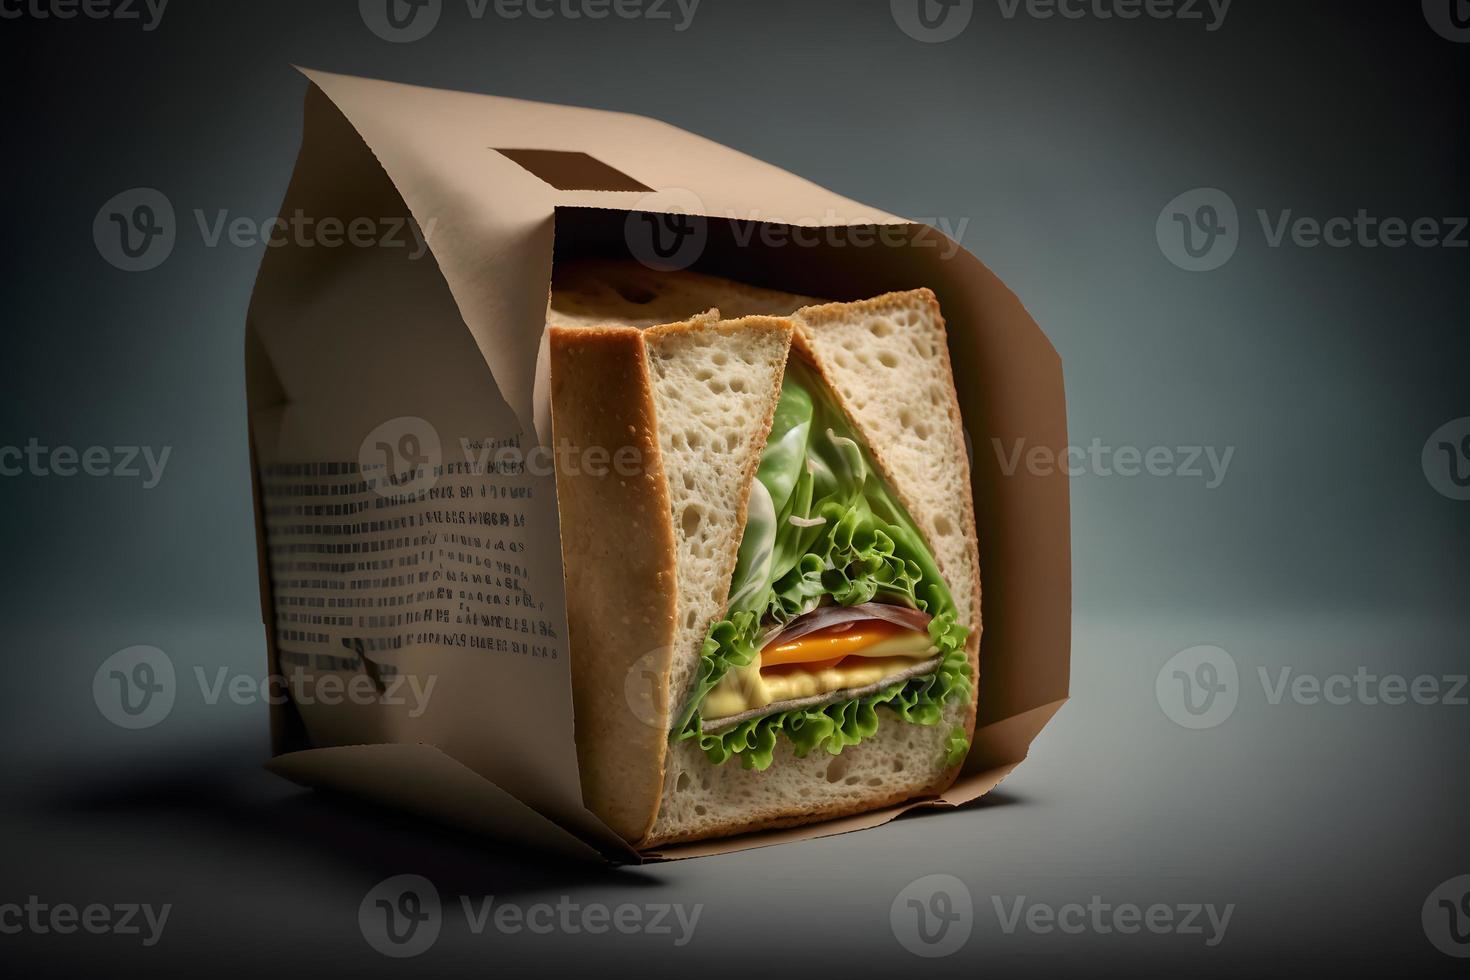 eigengemaakt nemen weg belegd broodje Ingepakt in een grijs papier voedsel fotografie foto